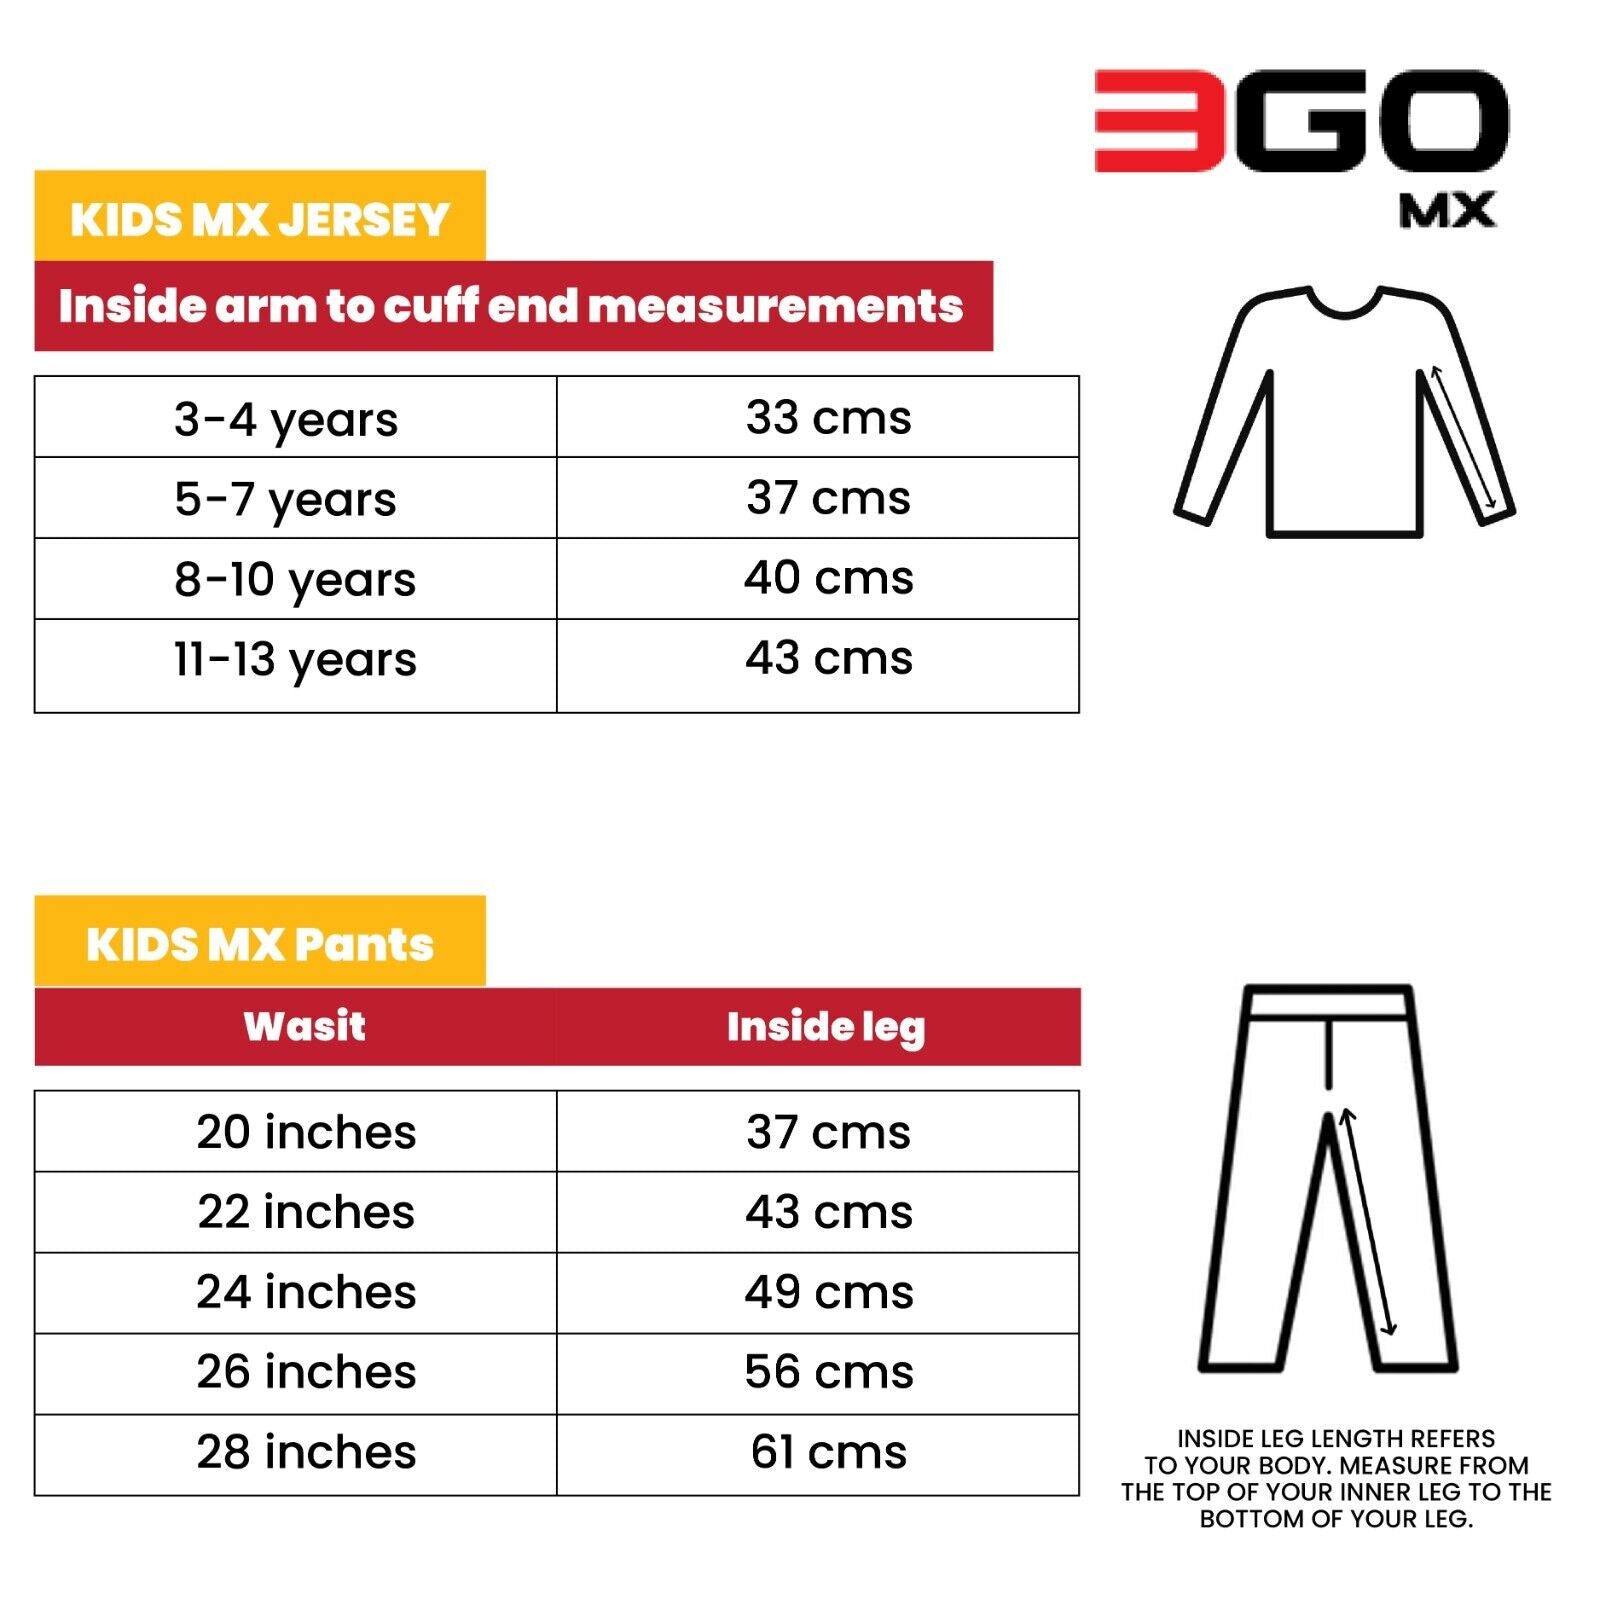 3GO KIDS MX CLOTHING - Size Chart